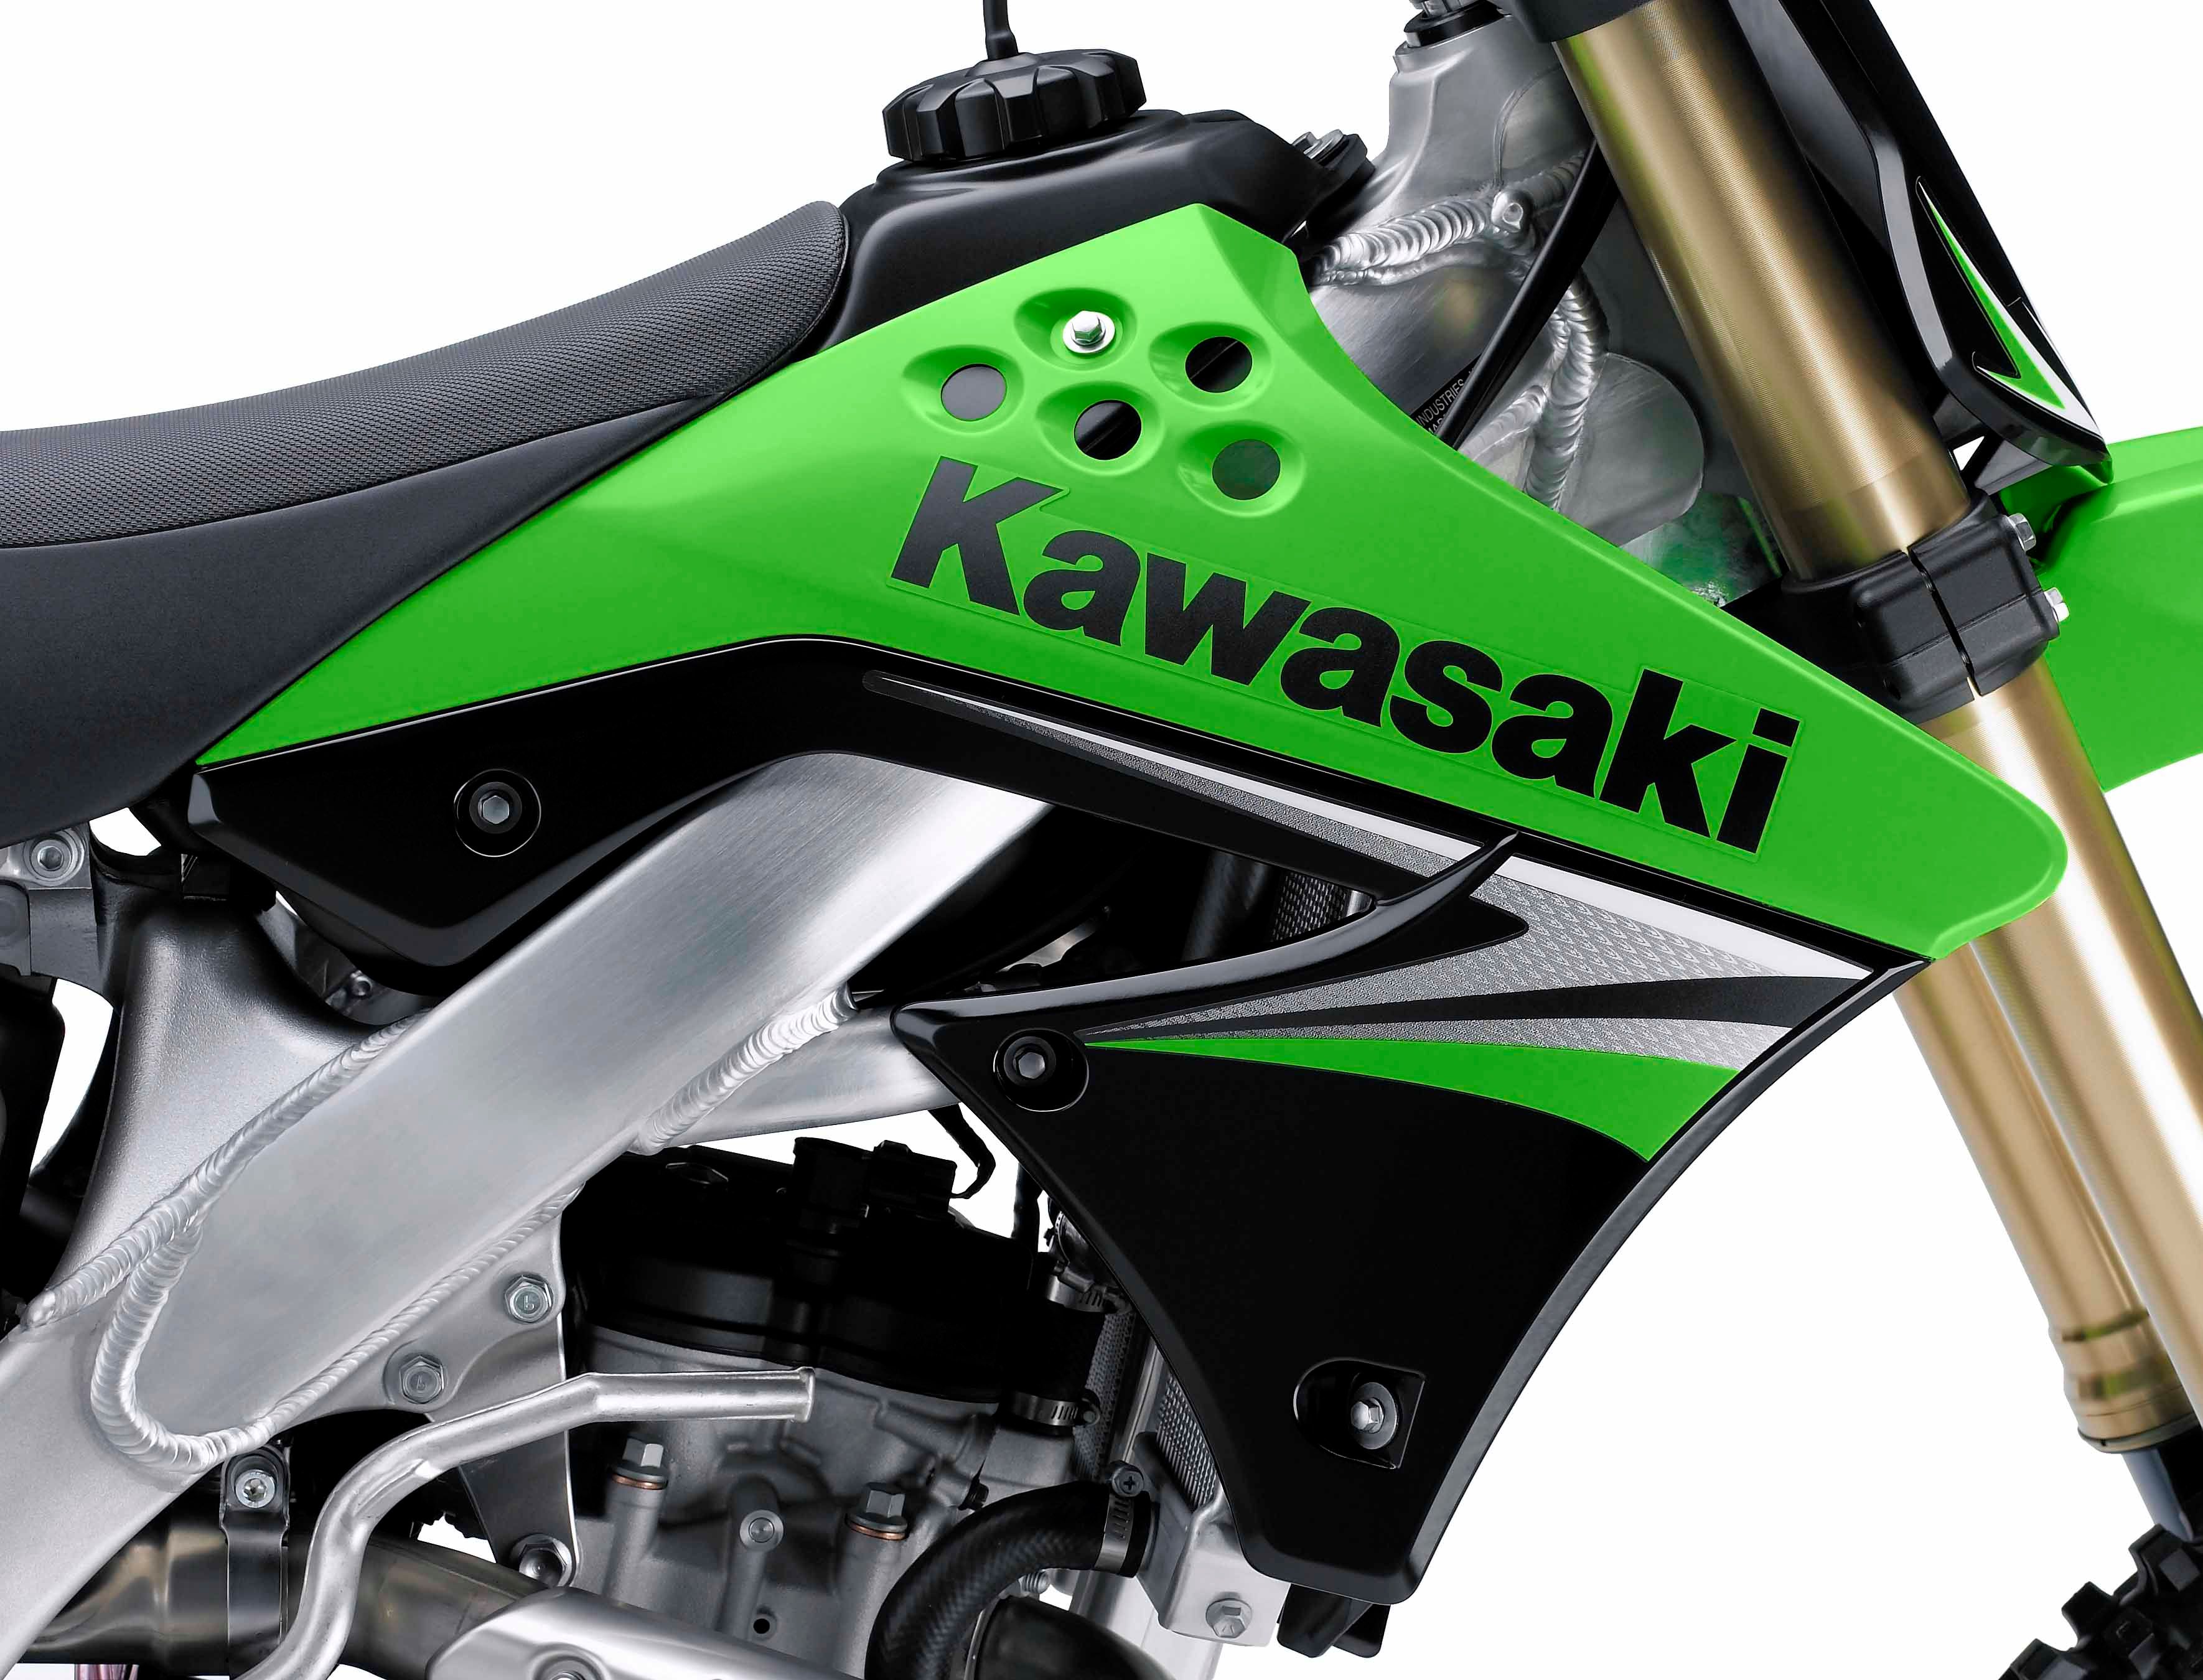  2009 Kawasaki KX250F